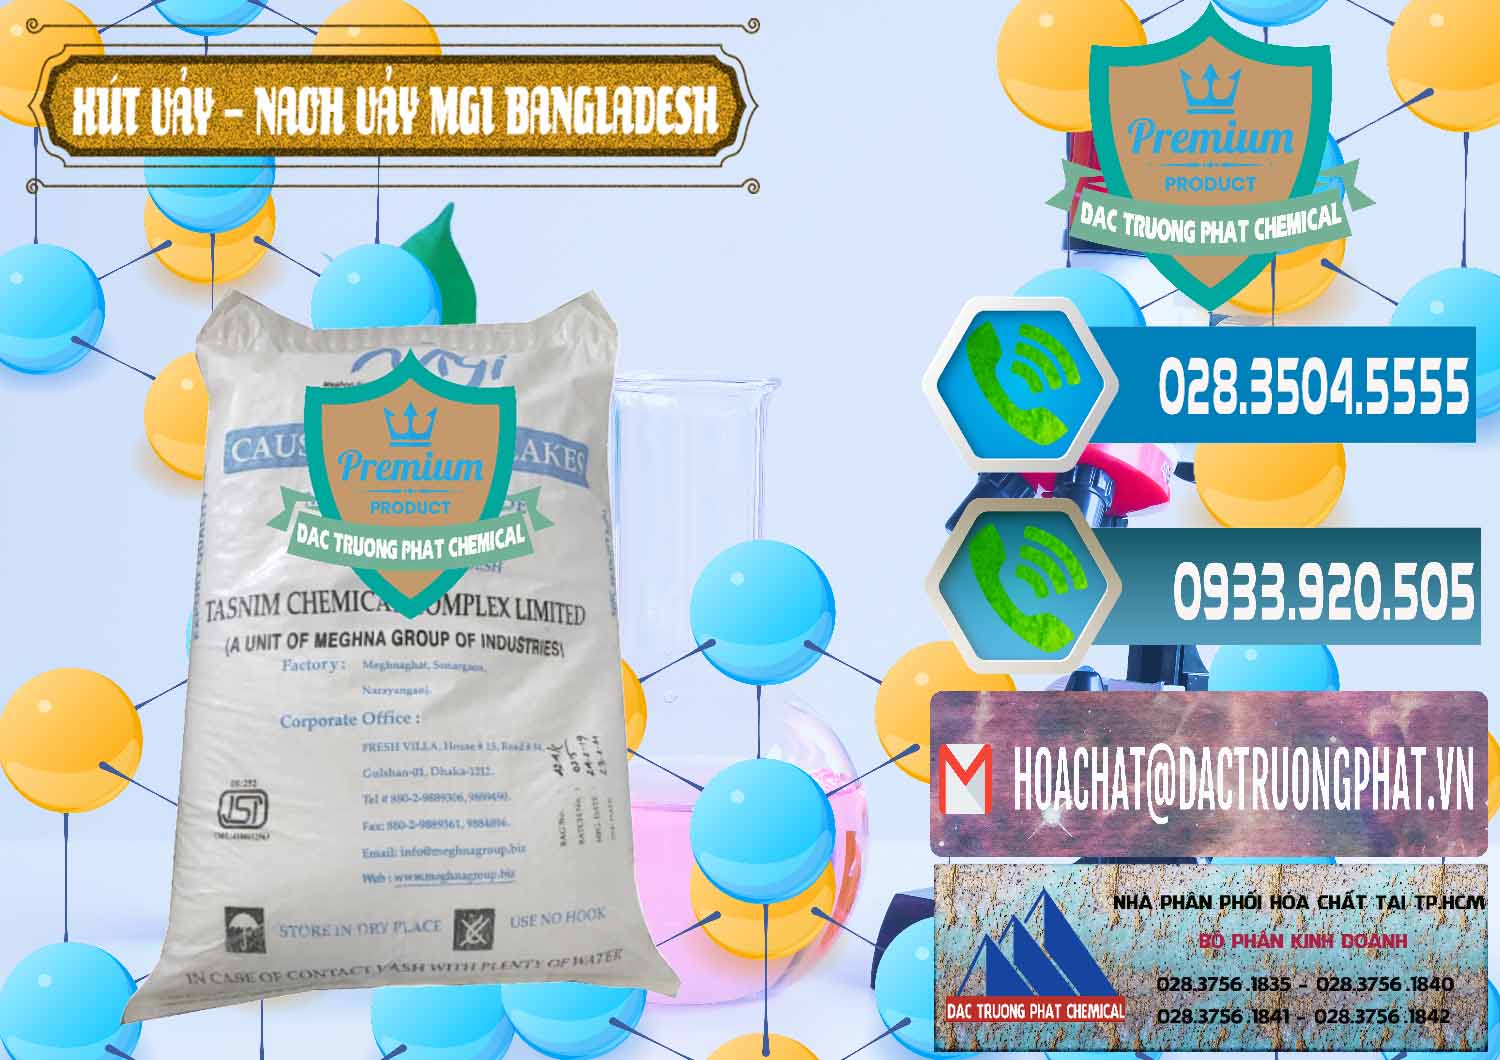 Cty chuyên cung cấp và bán Xút Vảy - NaOH Vảy 99% MGI Bangladesh - 0274 - Đơn vị phân phối và bán hóa chất tại TP.HCM - congtyhoachat.net